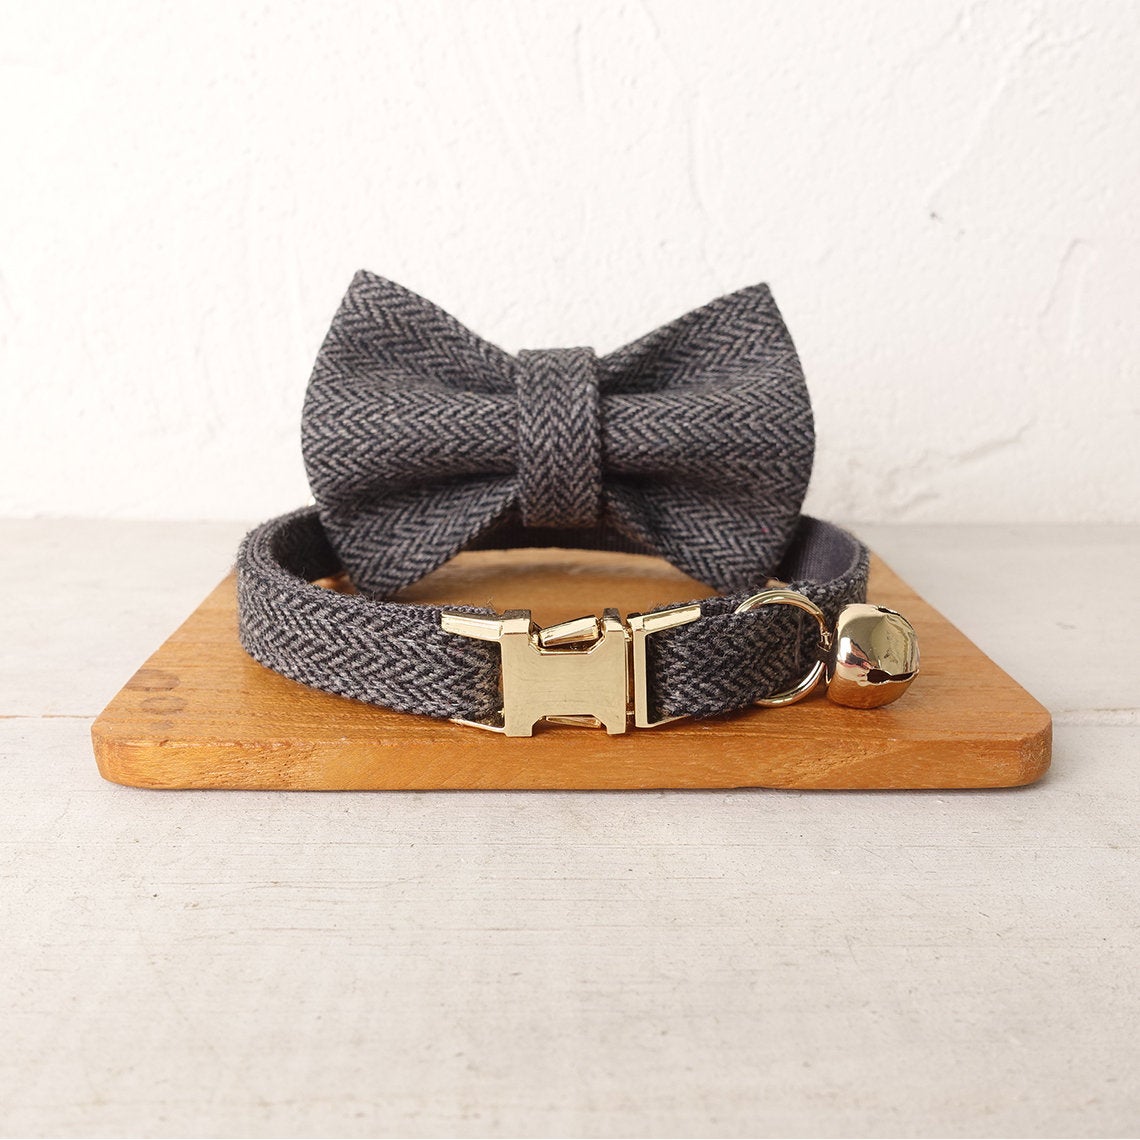 Detachable Bowtie Personalized Pet Collar Set